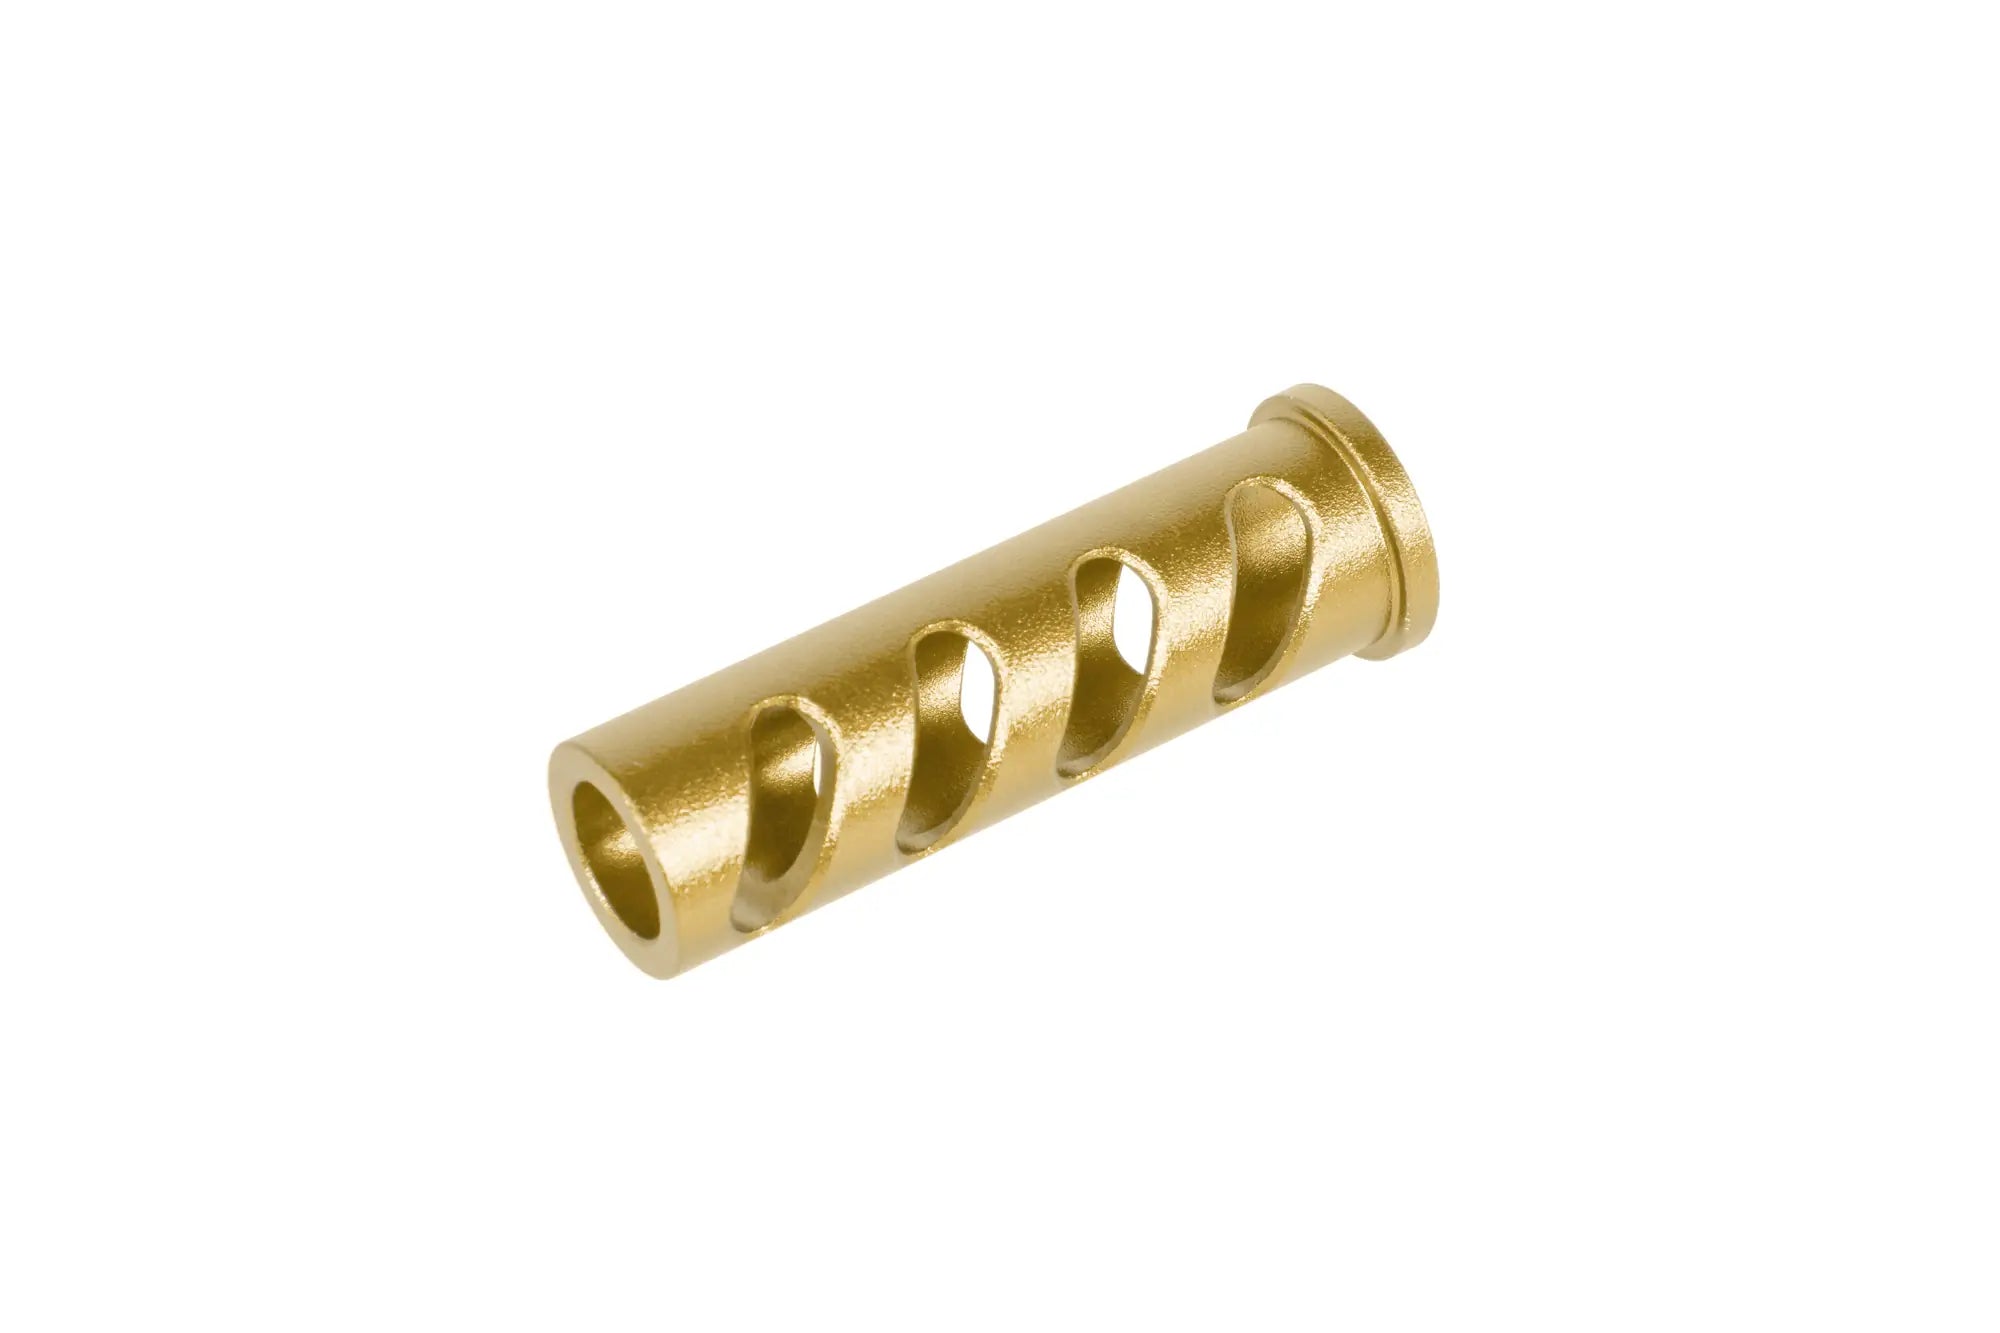 LA Capa Customs CUTOUT lock guide cap for TM Hi-Capa 5.1 replicas (with Delrin ring) Gold